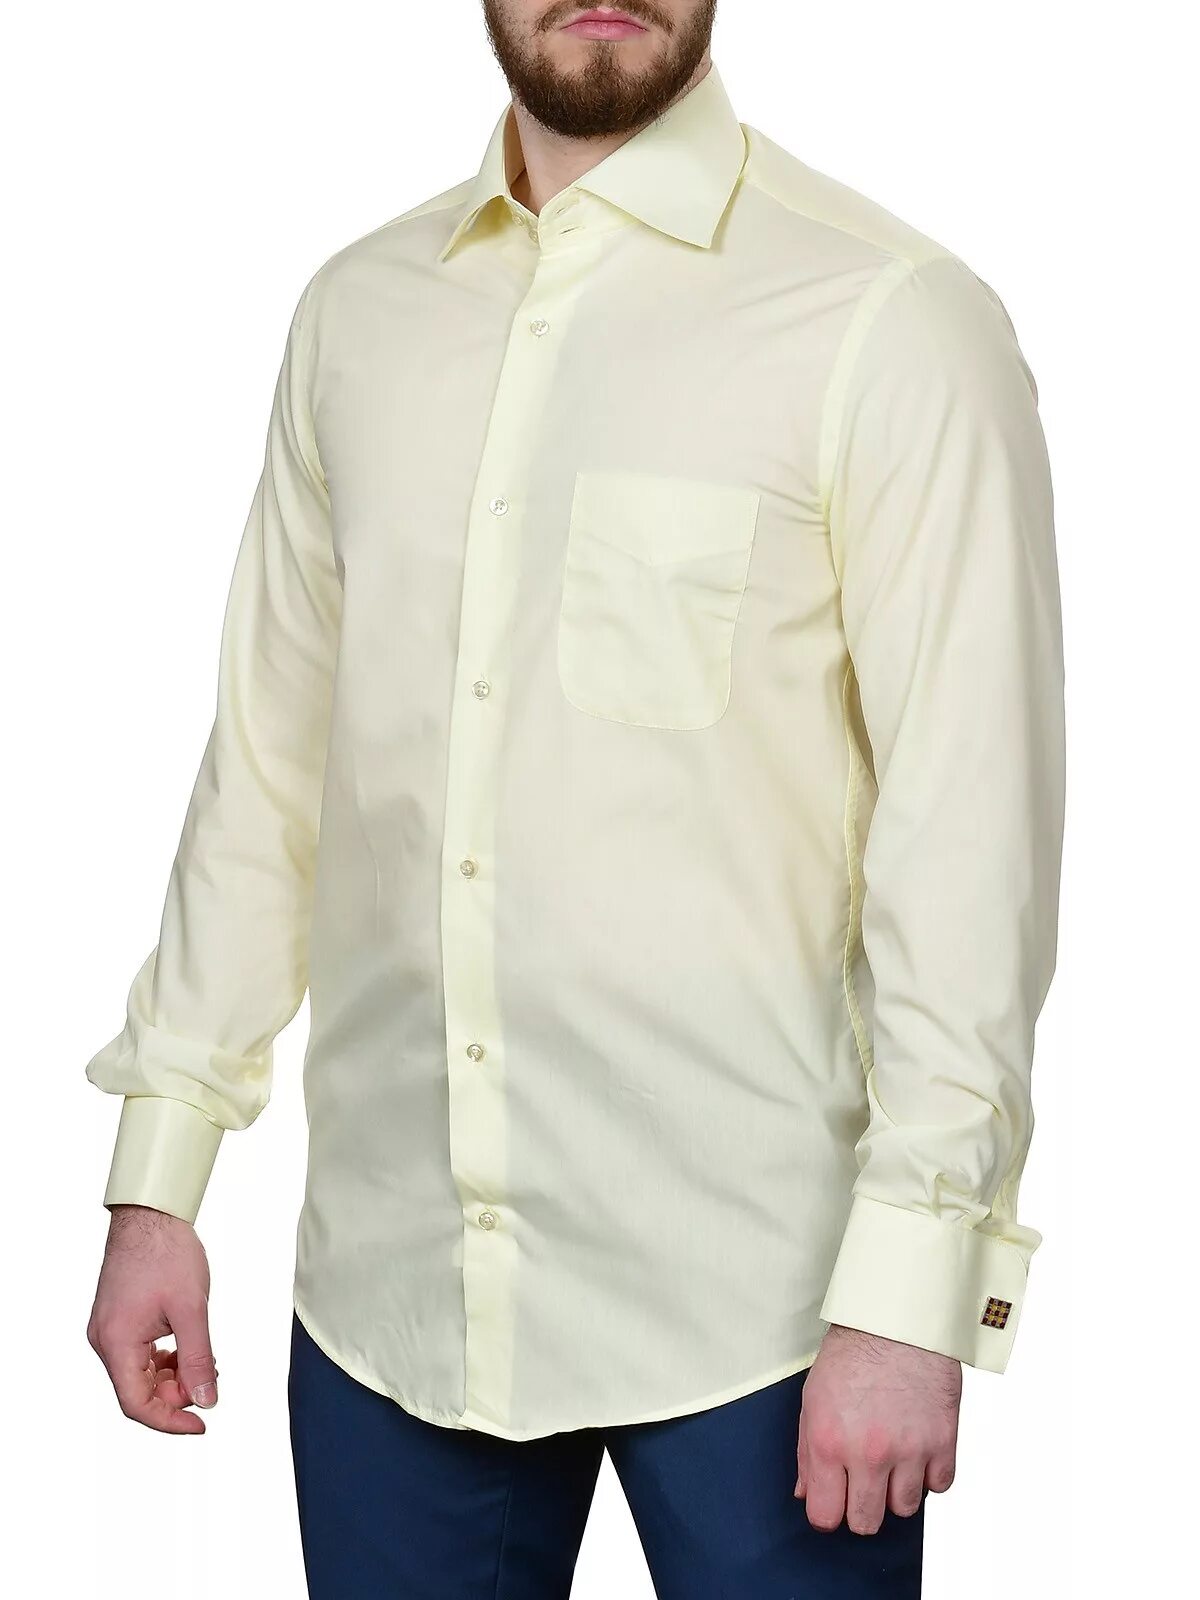 Кремовая рубашка. Кремовая рубашка мужская. Мужская рубашка сливочного цвета. Приталенная рубашка желтая.